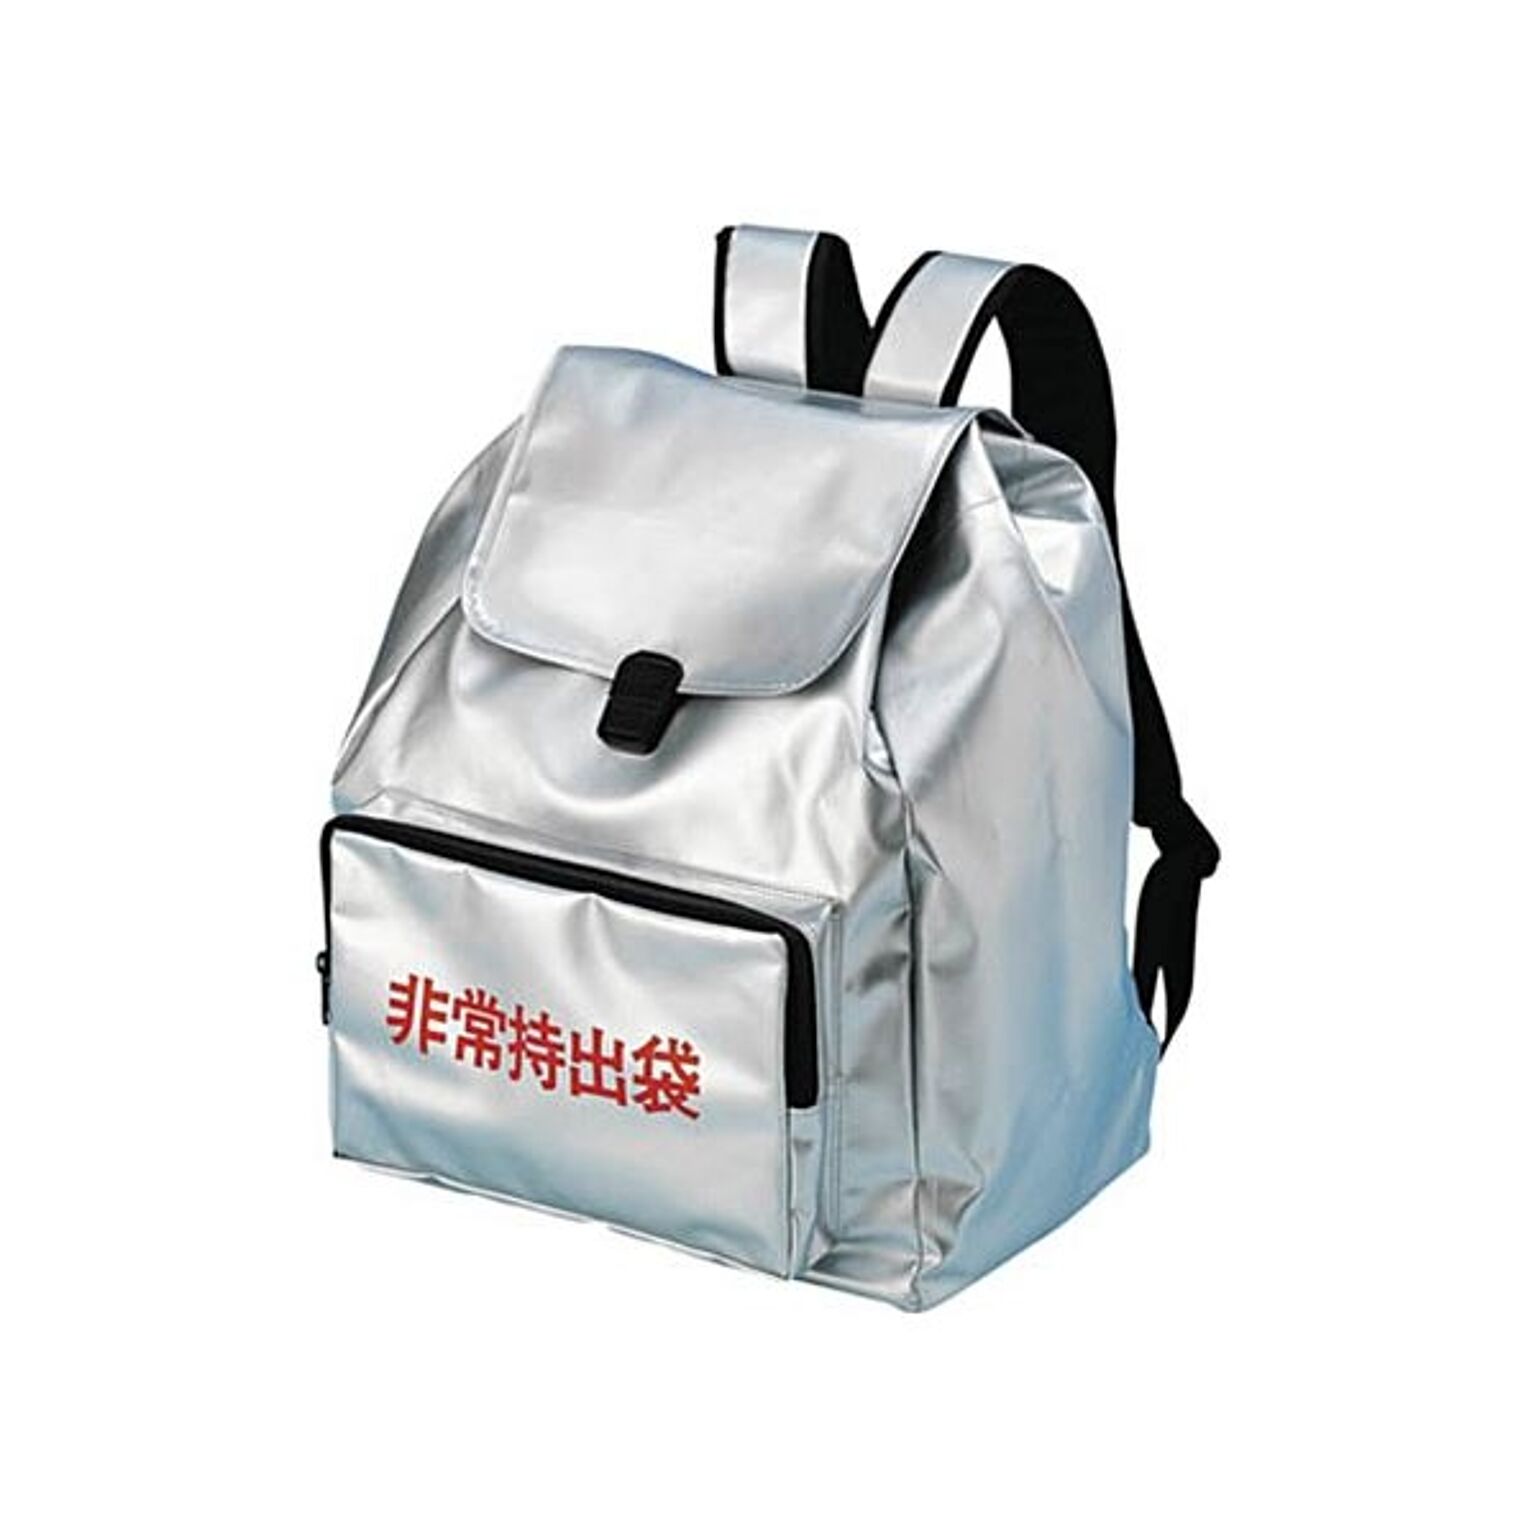 大明企画 大明大型非常持出袋450×355×200日本防炎協会認定品 7242011 1個